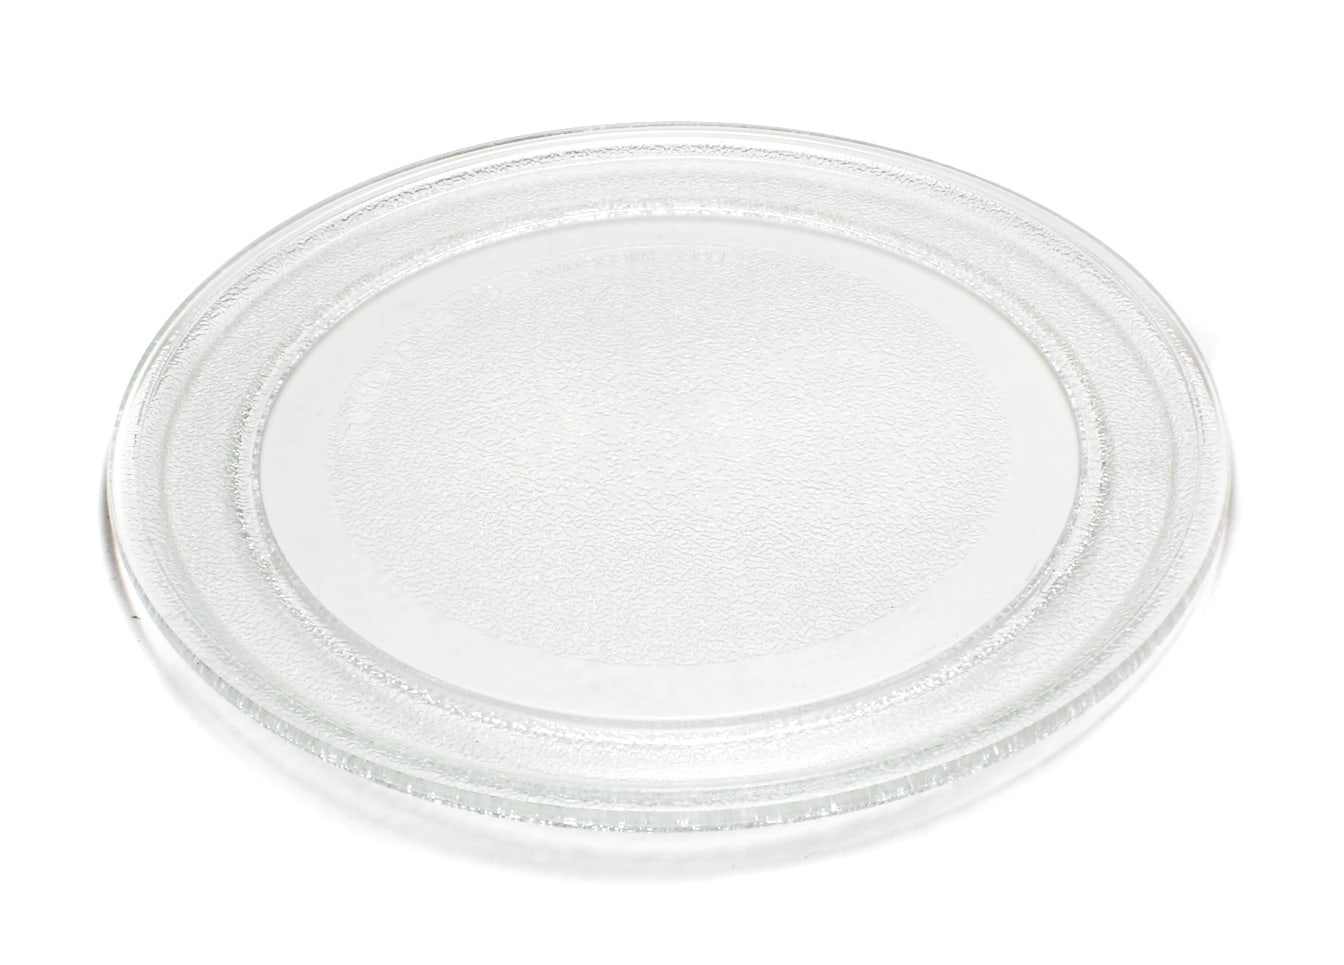 Тарелка для микроволновой печи Helpico 3390W1G005A, MCW012UN тарелка для свч onkron lg 3390w1g005a 24 5 см